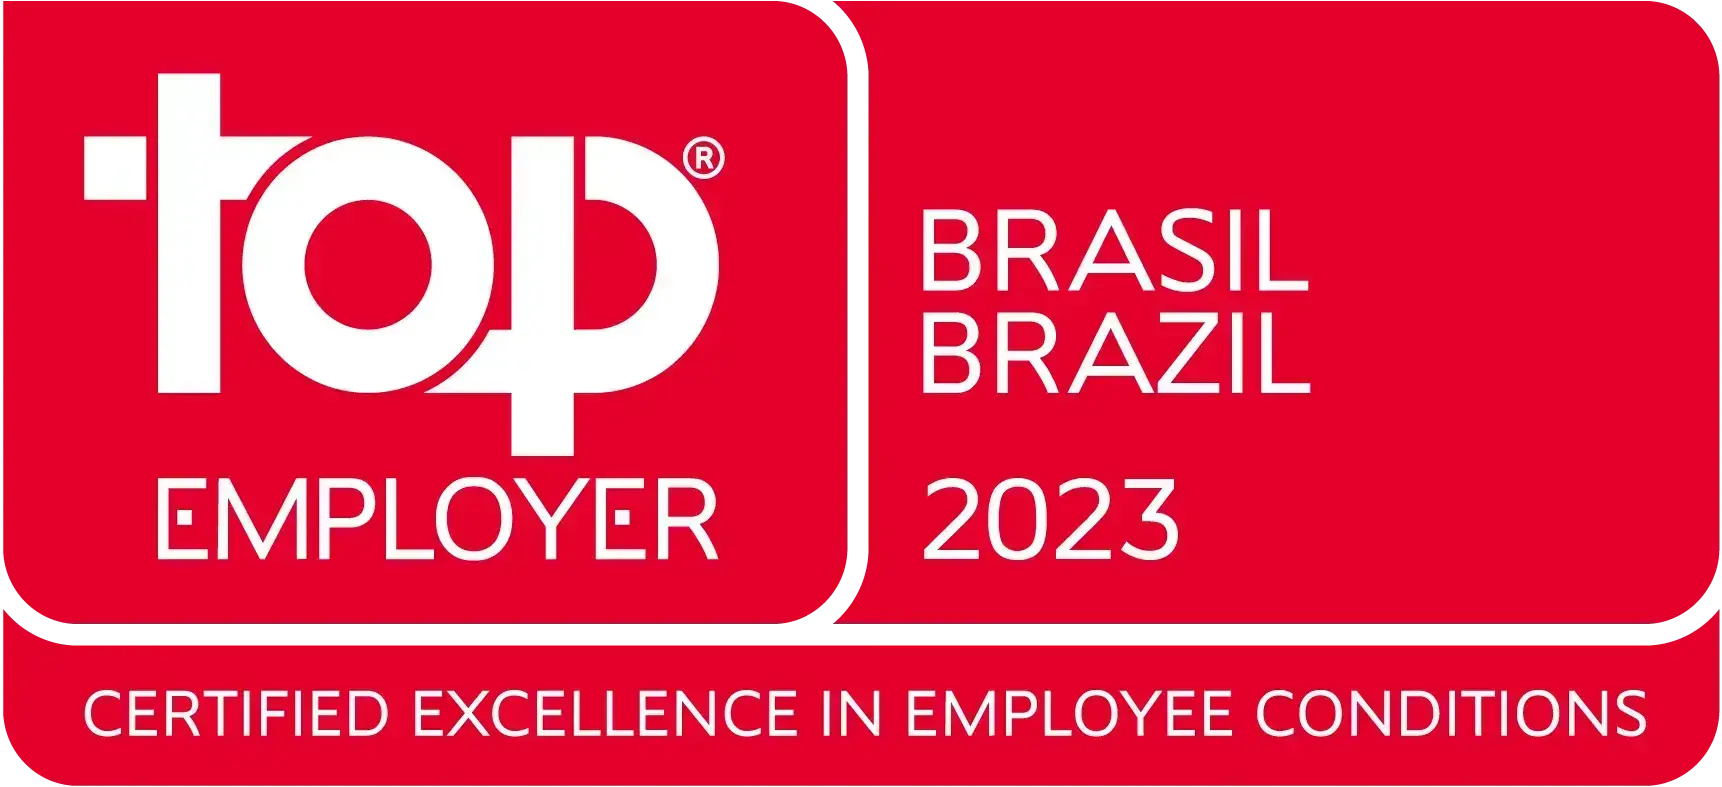 Melhor empregador no Brasil